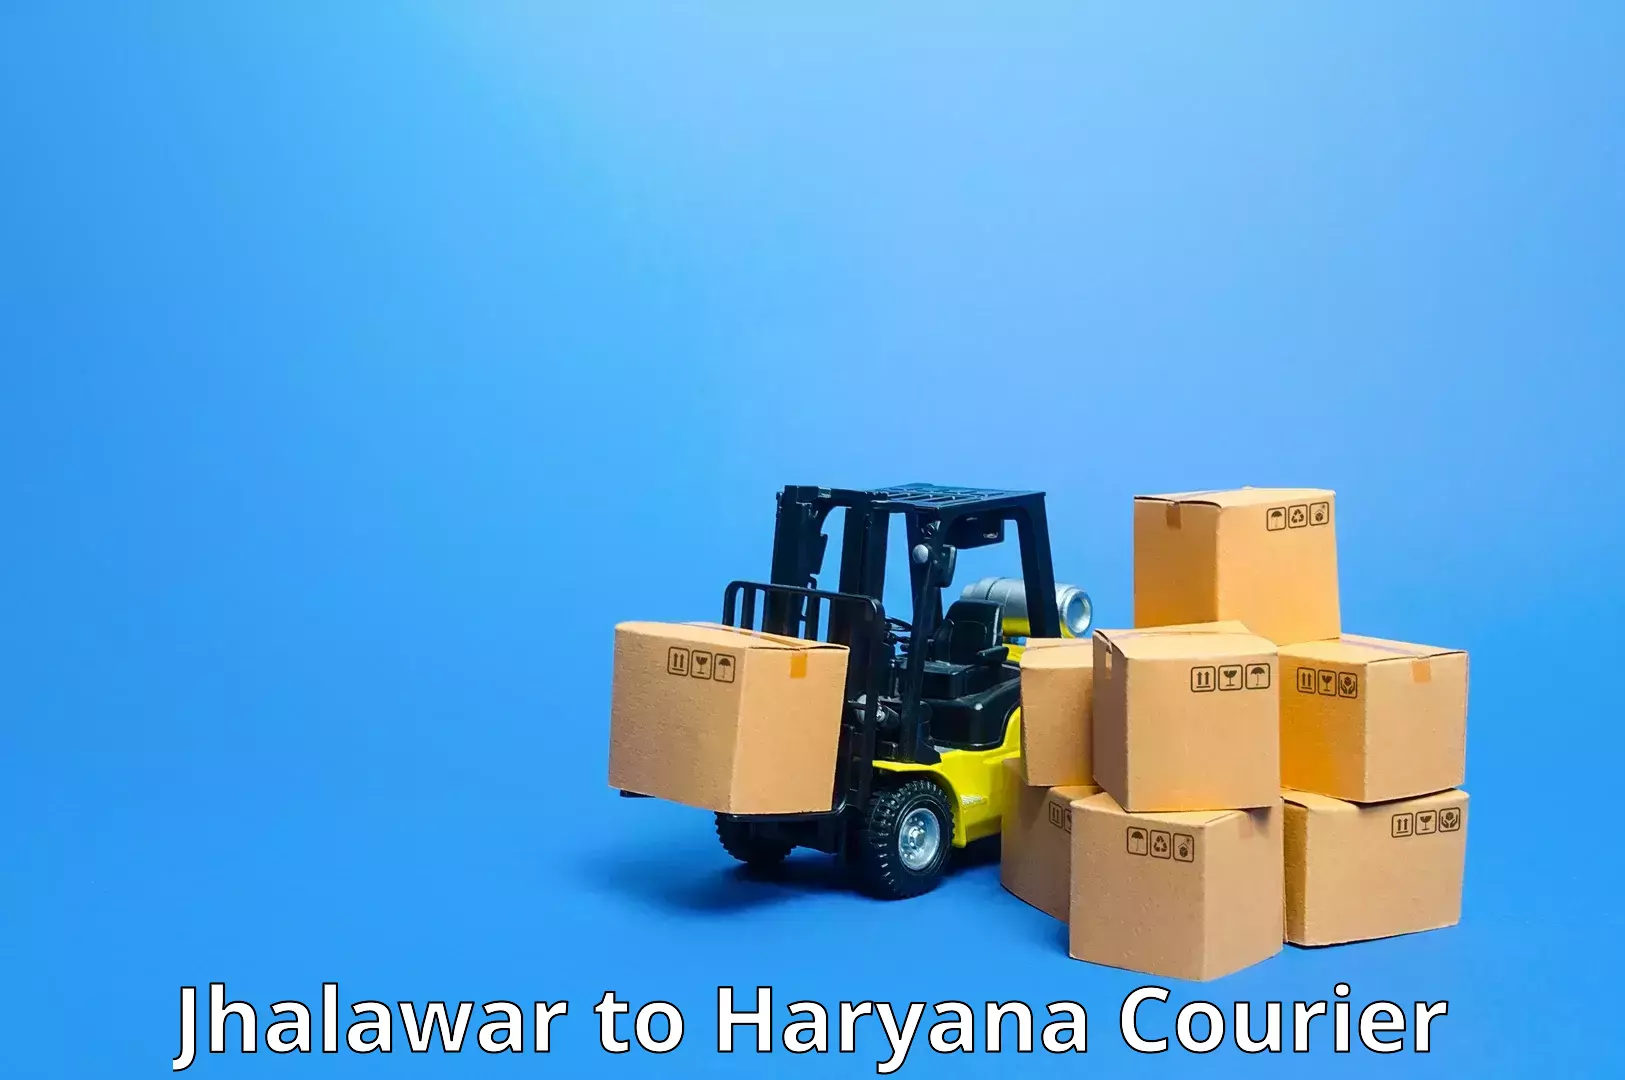 Package tracking Jhalawar to Hansi